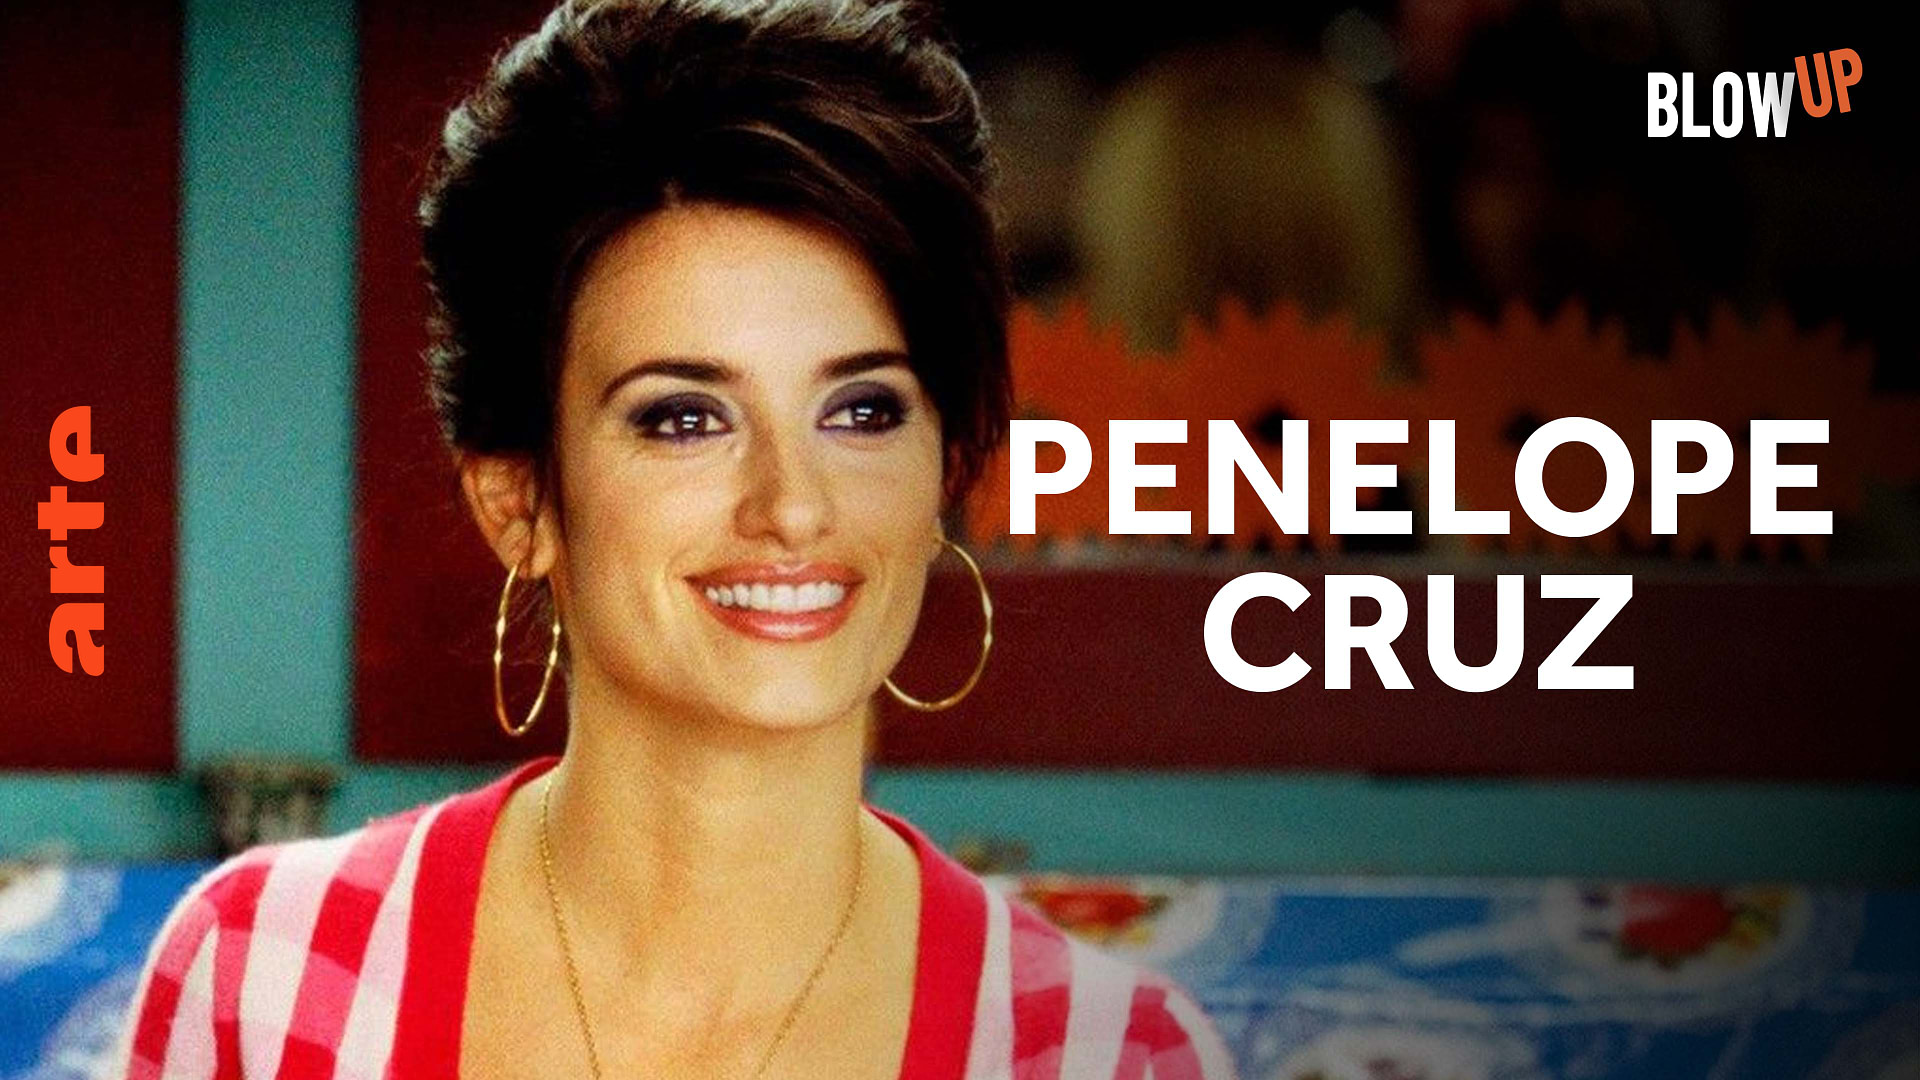 Blow up - Worum geht's bei Penelope Cruz?